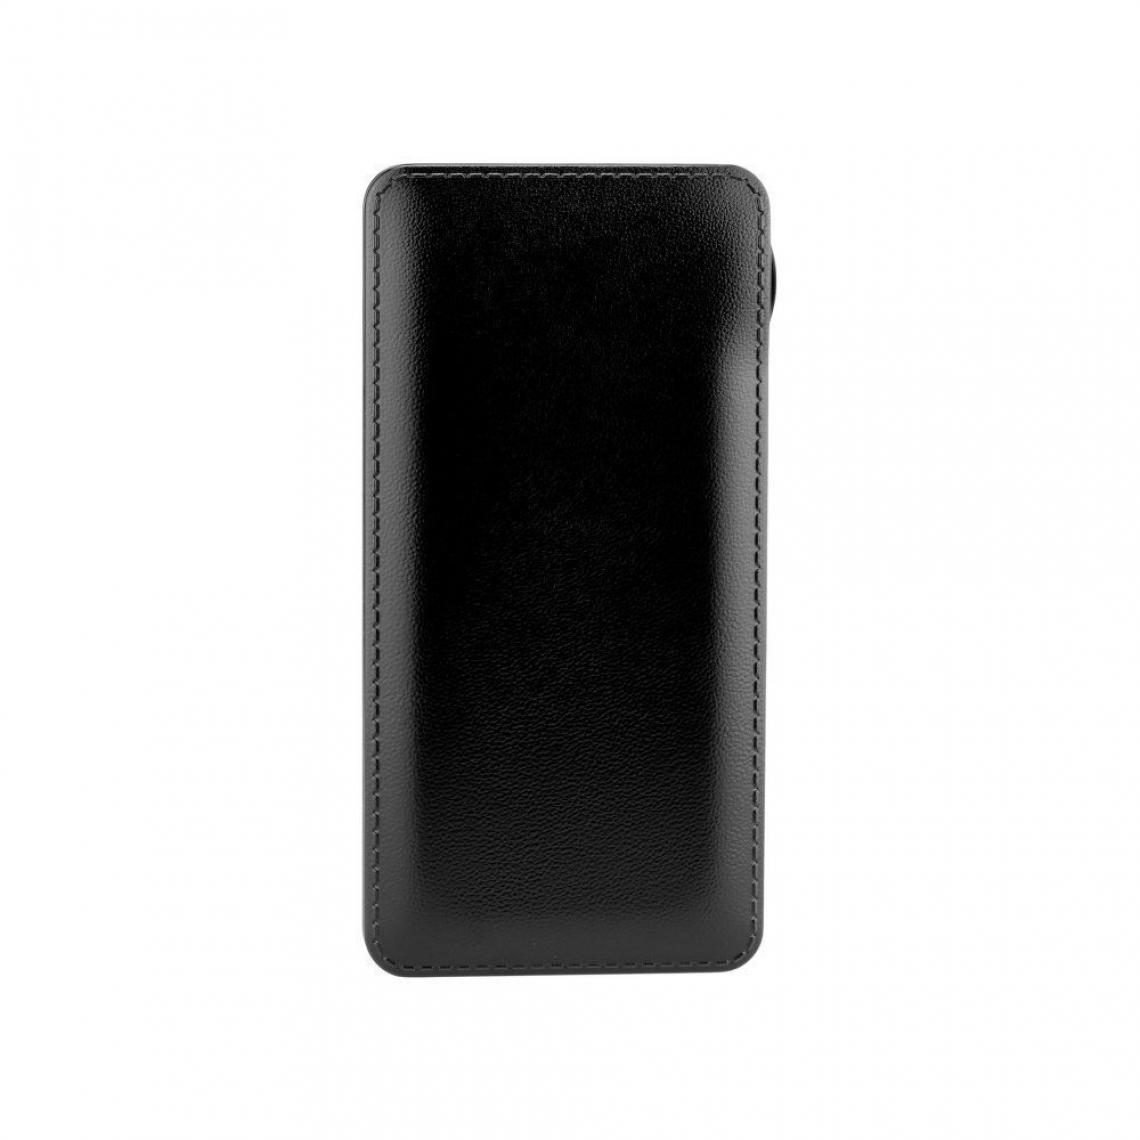 Ozzzo - Chargeur batterie externe 20000 mAh powerbank ozzzo noir pour LG K11 - Autres accessoires smartphone